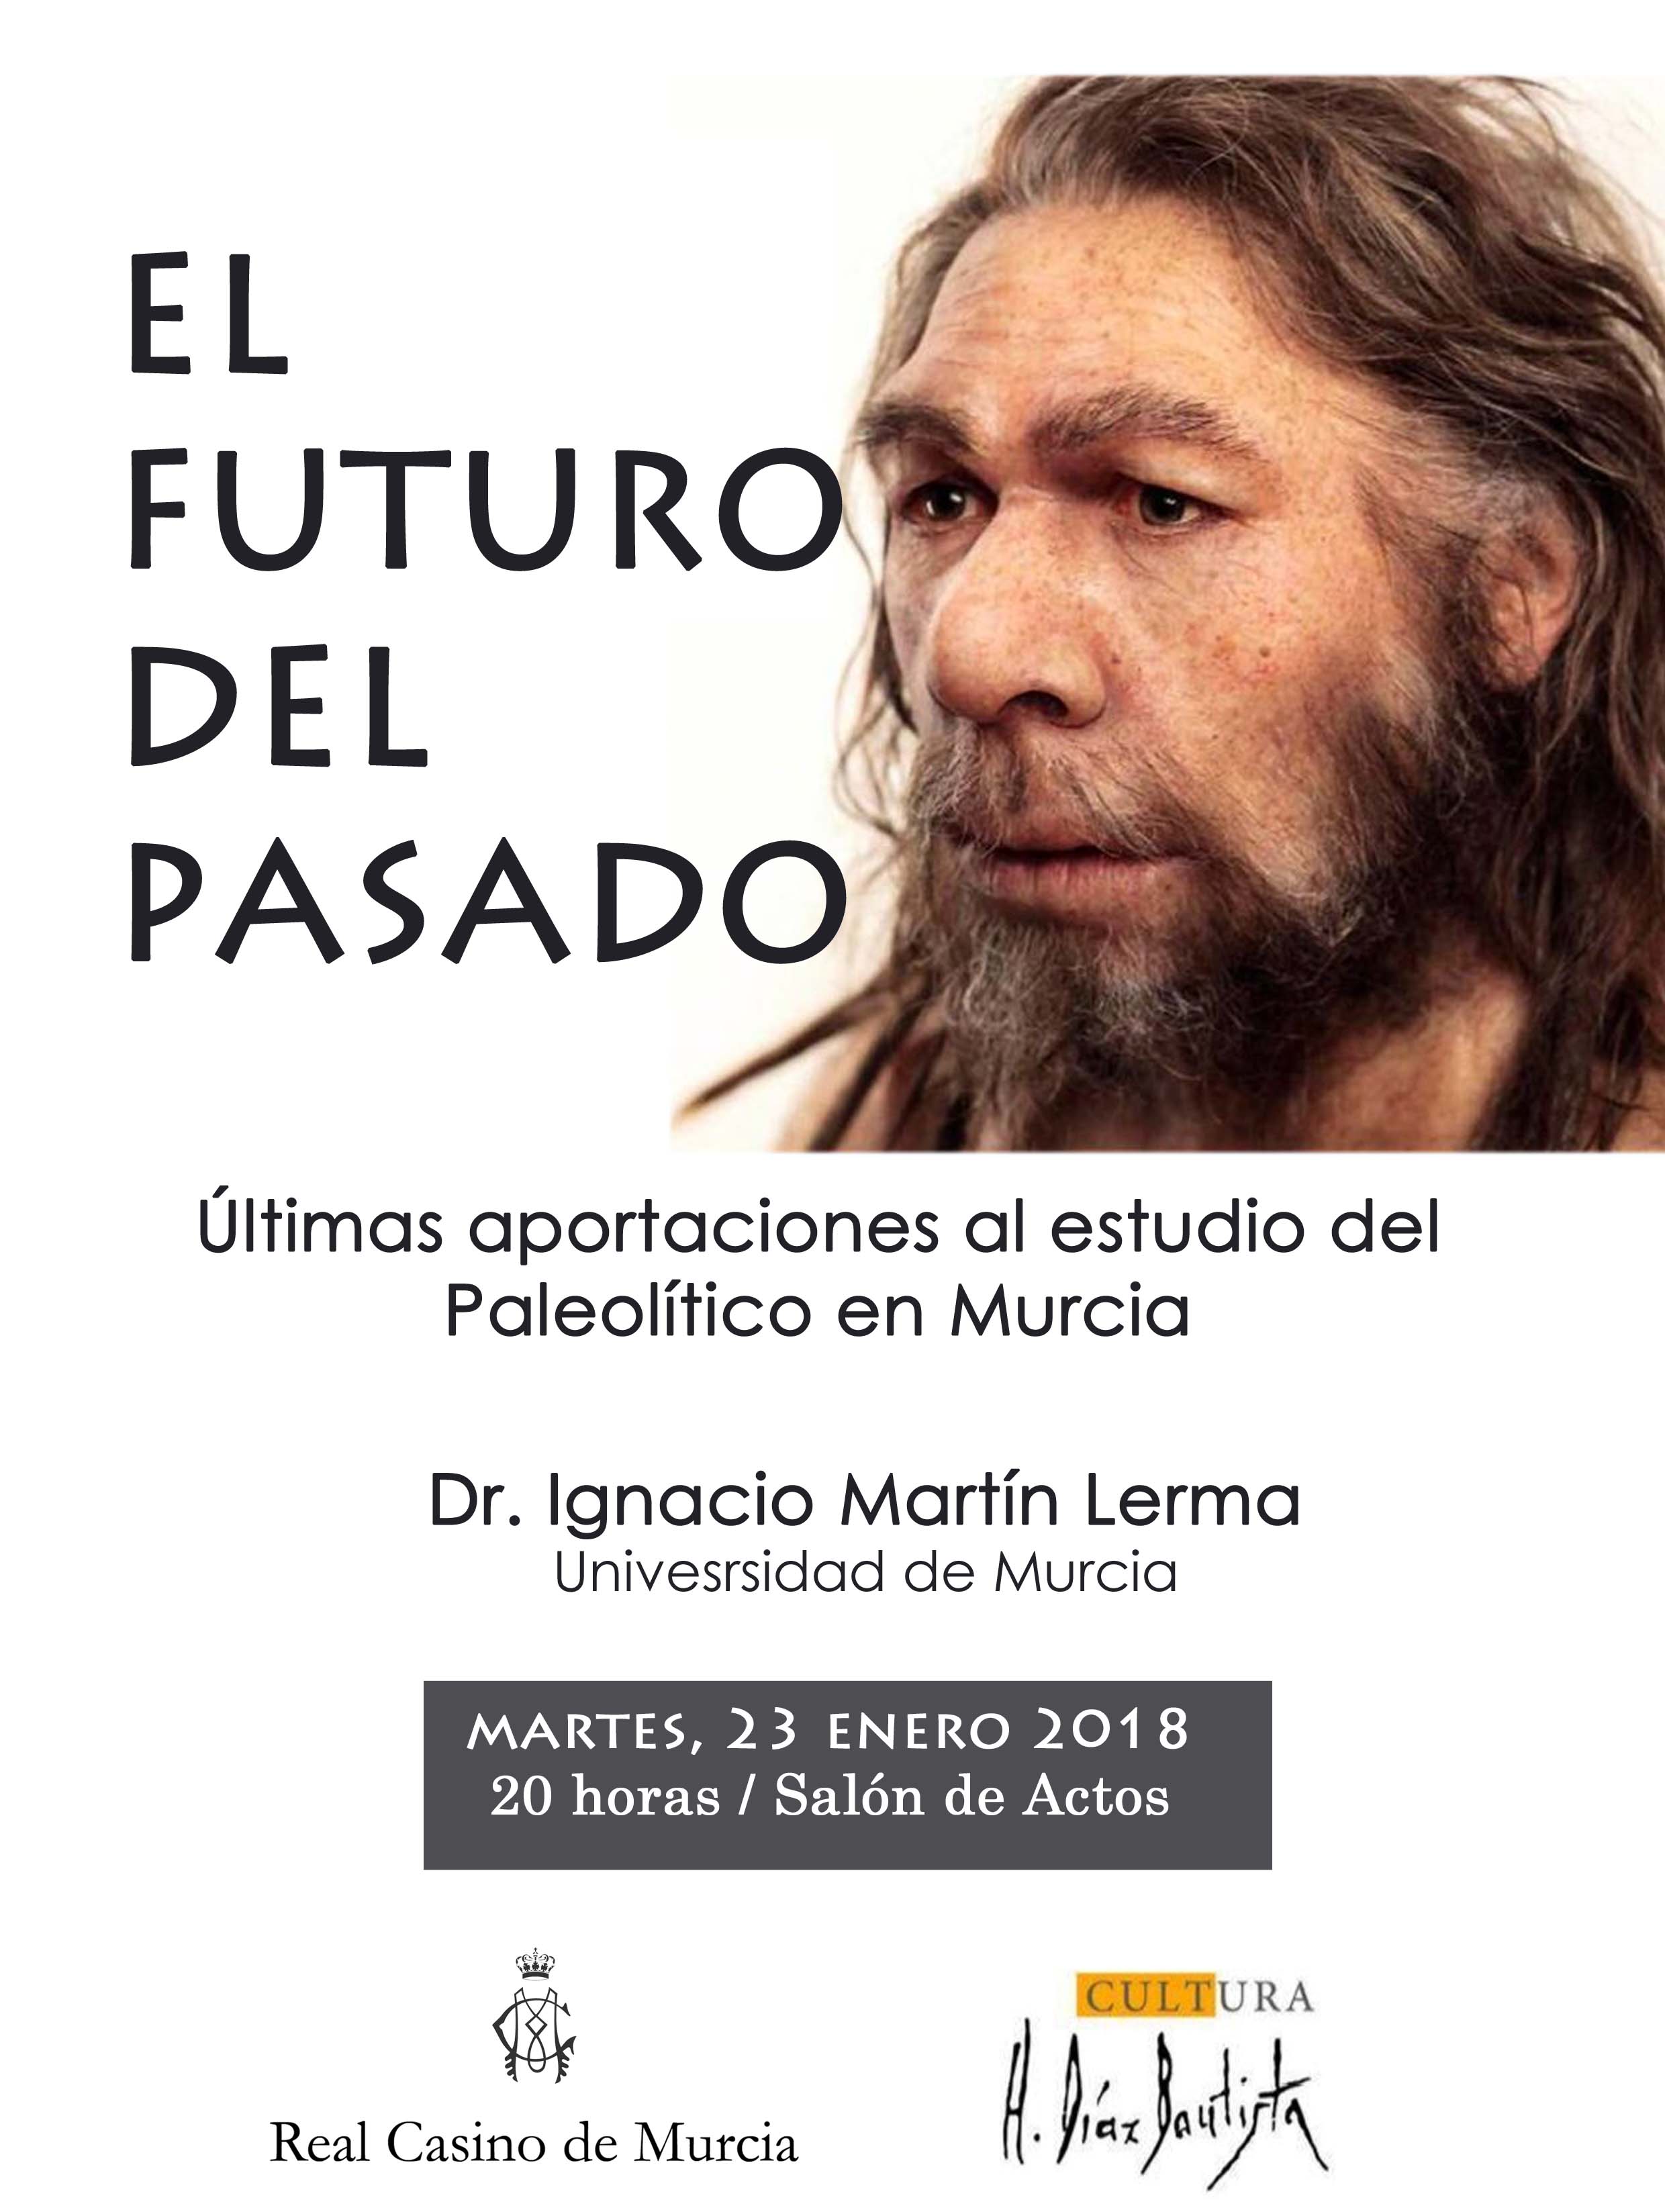 Charla sobre el Paleolítico en Murcia, con el Real Casino de Murcia